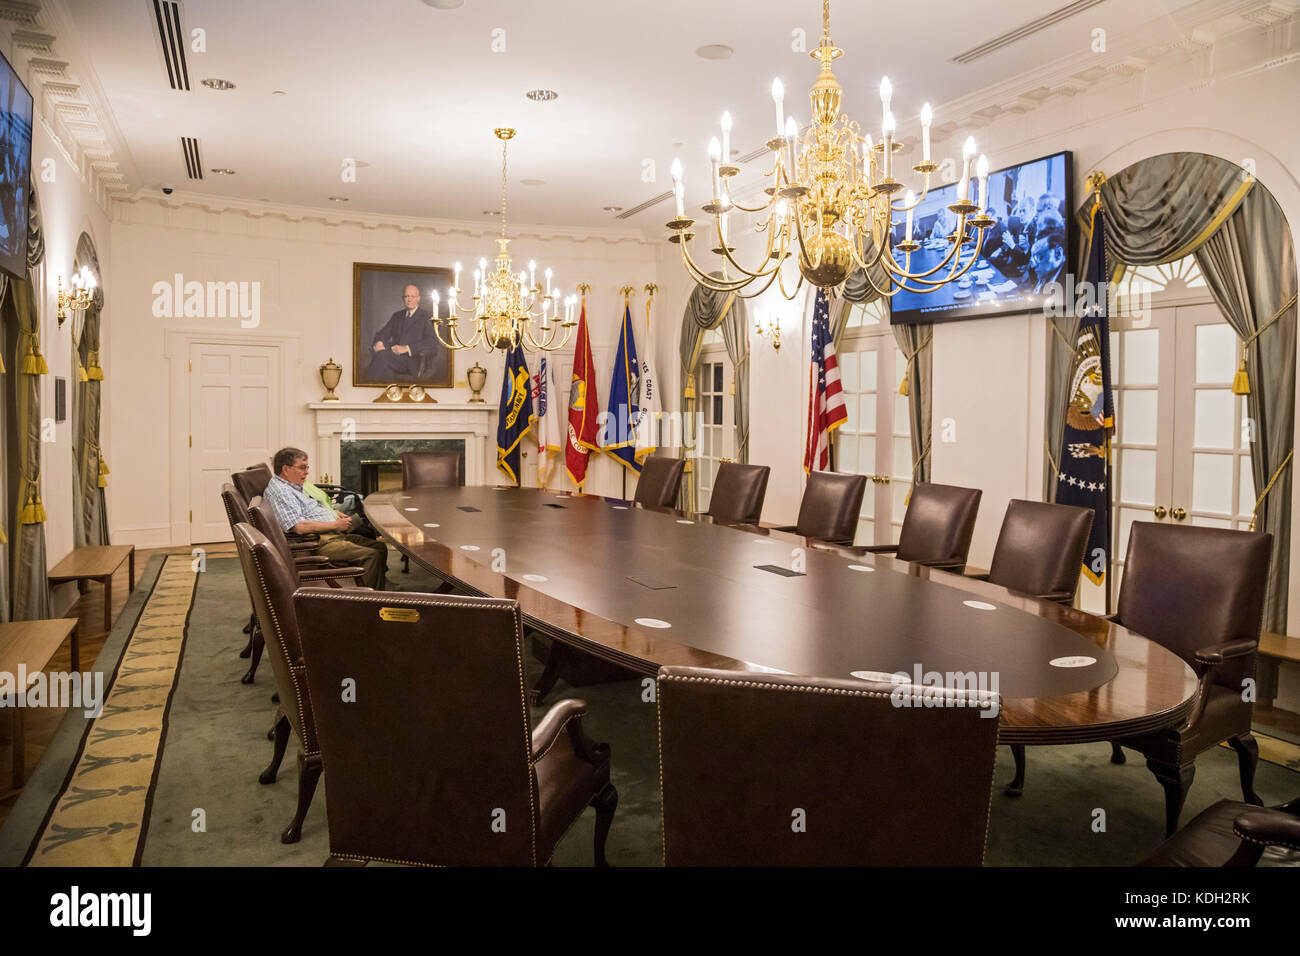 Grand Rapids, Michigan - Besucher sitzen am Tisch in der Replik des Weißen Hauses Kabinett Zimmer des Gerald Ford presidential Museum. Stockfoto